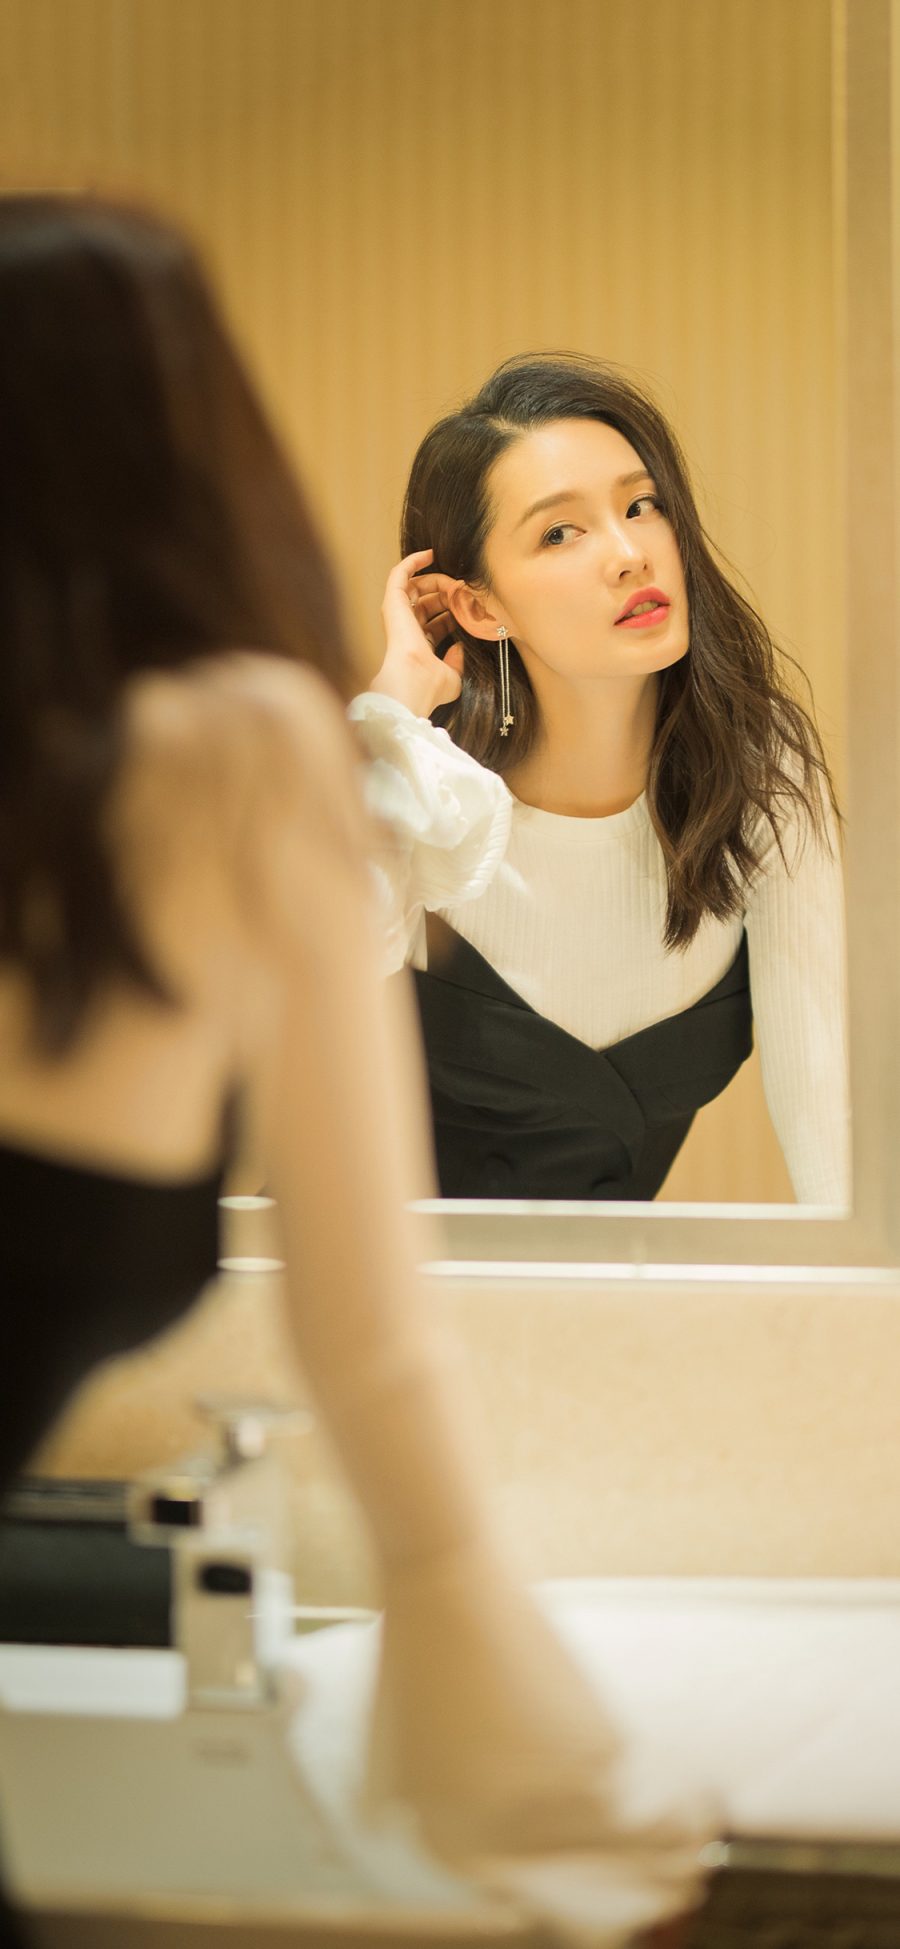 [2436×1125]李沁 演员 明星 艺人 时尚 镜子 苹果手机美女壁纸图片